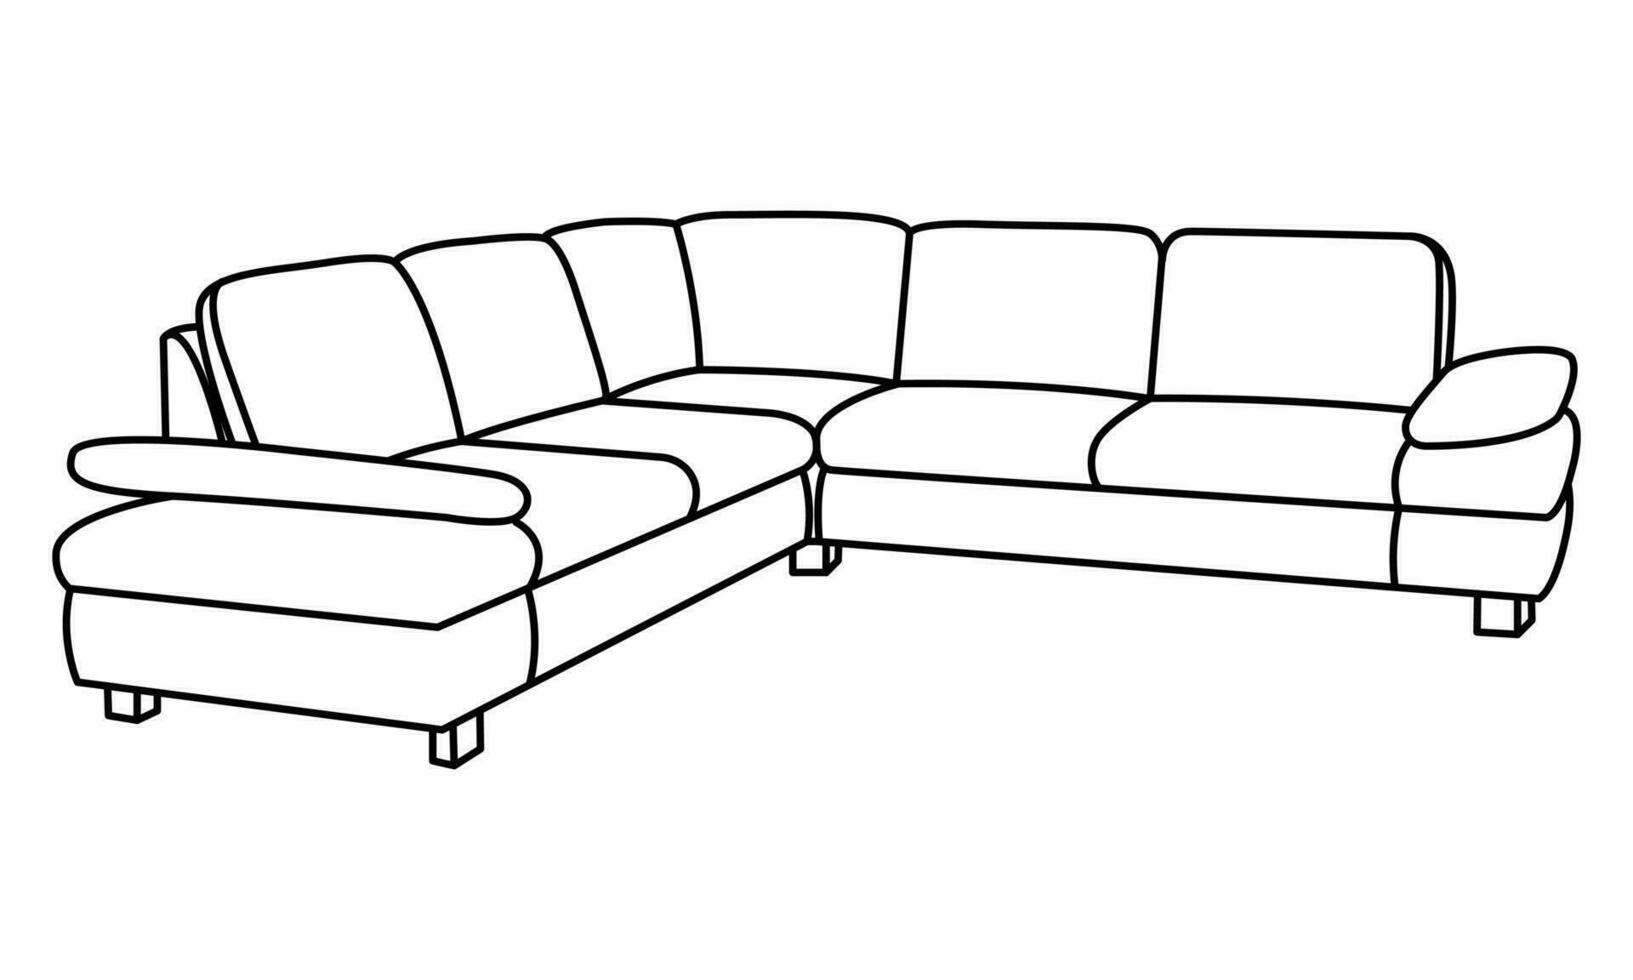 vector lineair illustratie van een bank. meubilair voor uw interieur in de stijl van minimalisme. meubilair icoon.